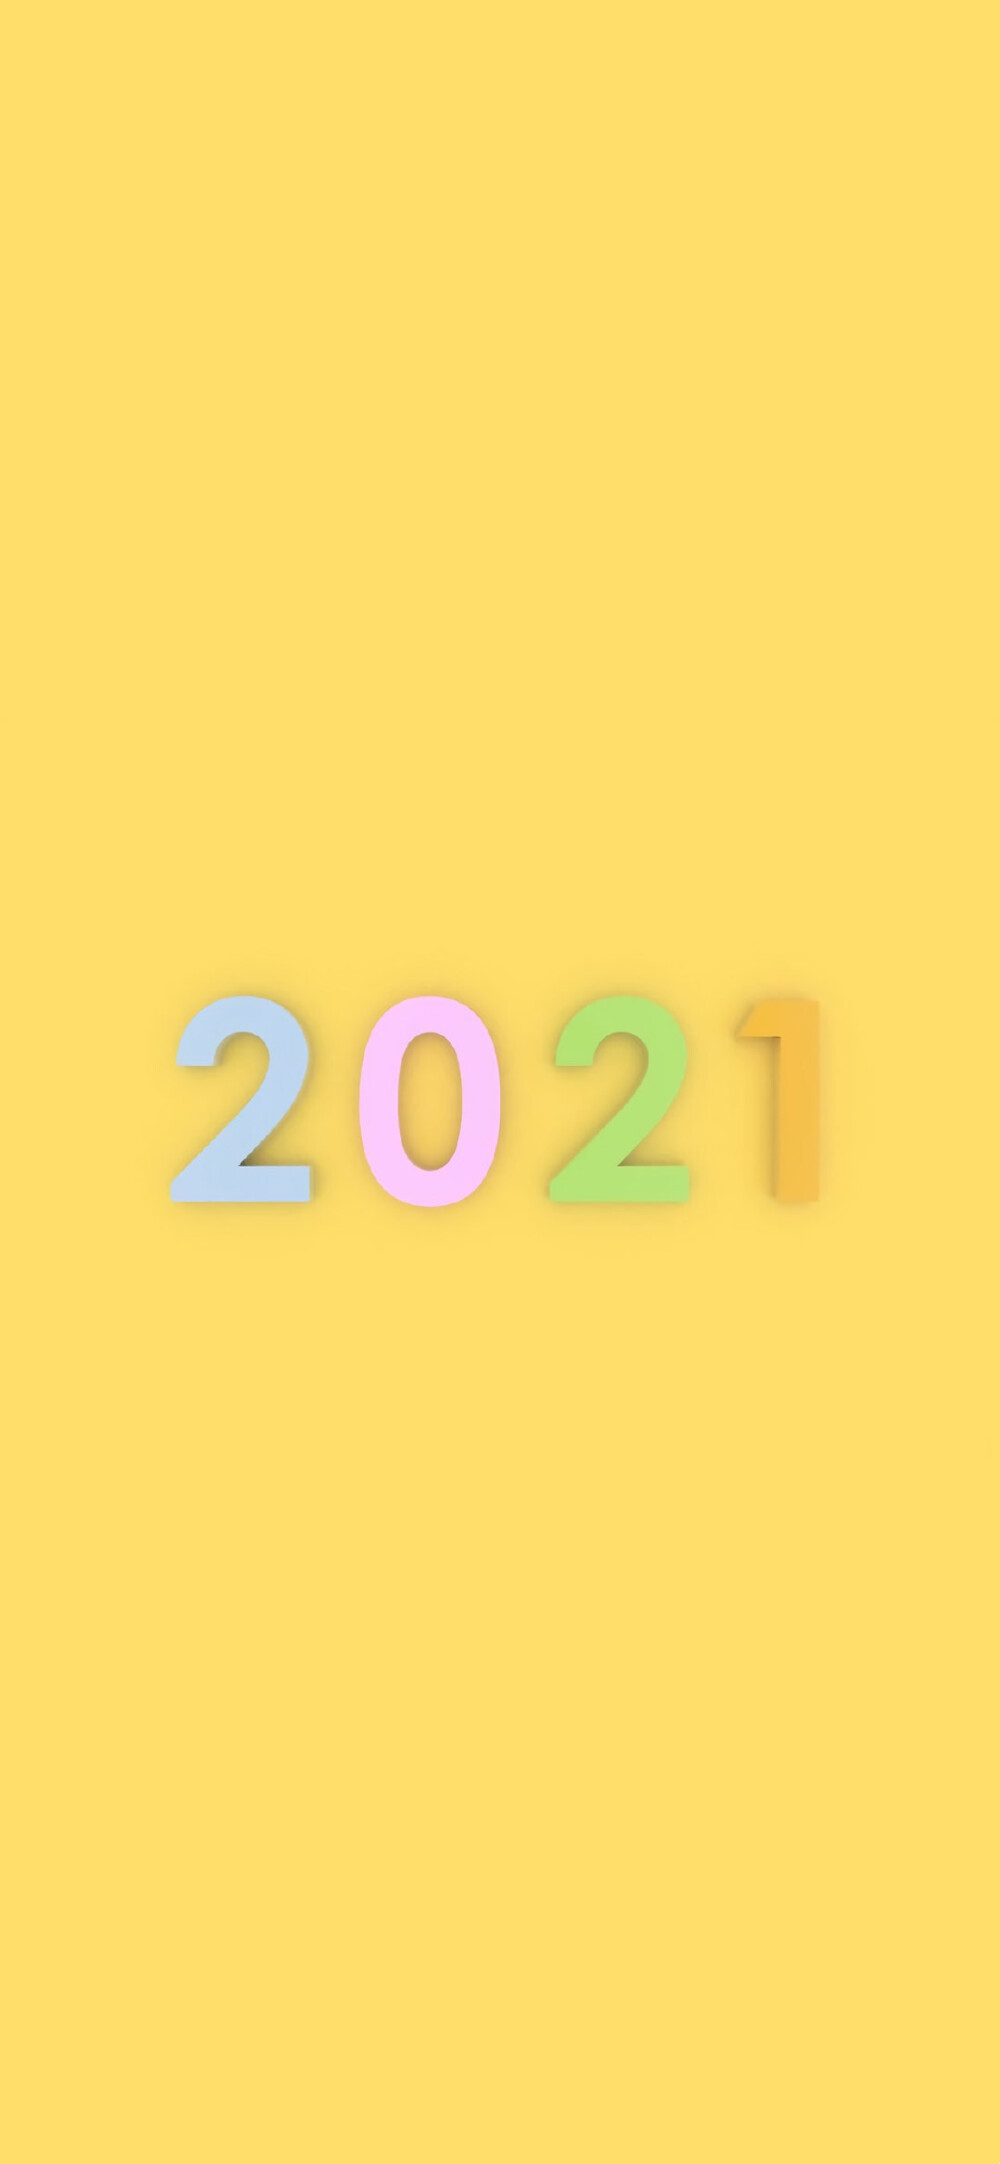 2021新年壁纸 - 堆糖,美图壁纸兴趣社区